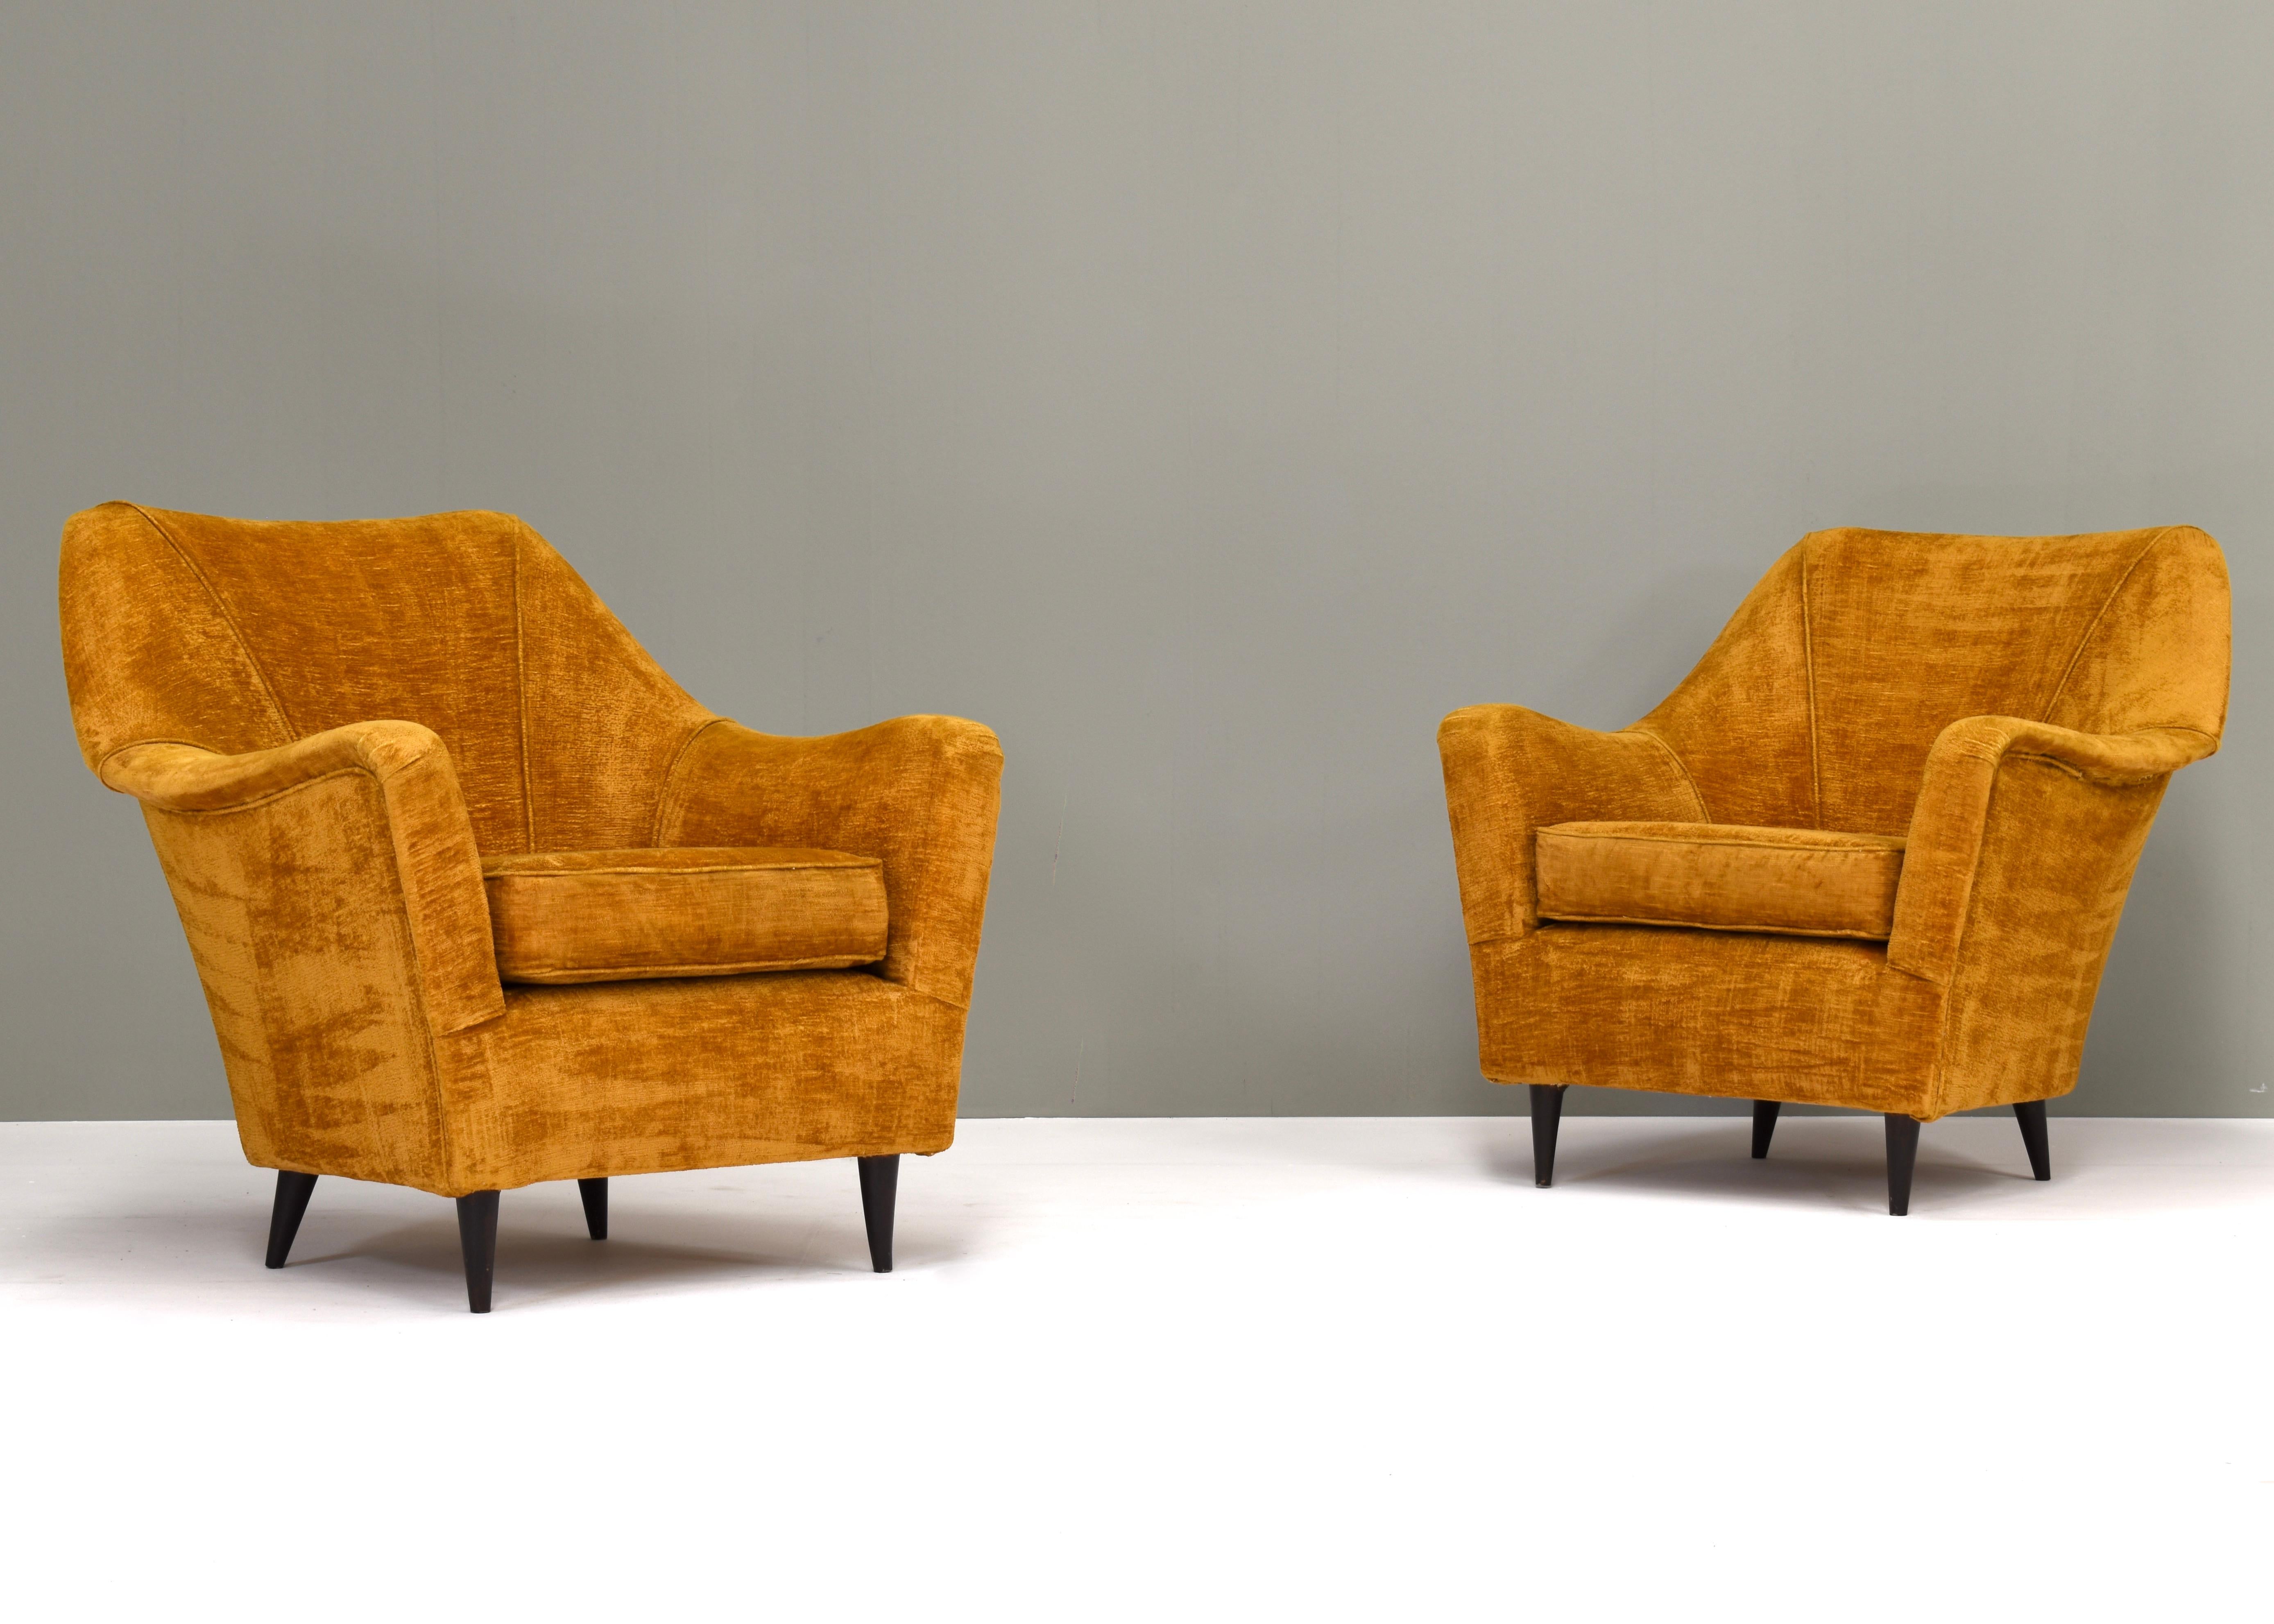 Ein Paar italienische Sessel aus den 1950er Jahren in Originalstoff. Von oder im Stil von Ico Parisi (Ariberto Colombo).
Die Stühle haben Abnutzungserscheinungen an den Armlehnen und einigen Kanten. Der Stoff ist professionell gereinigt worden.